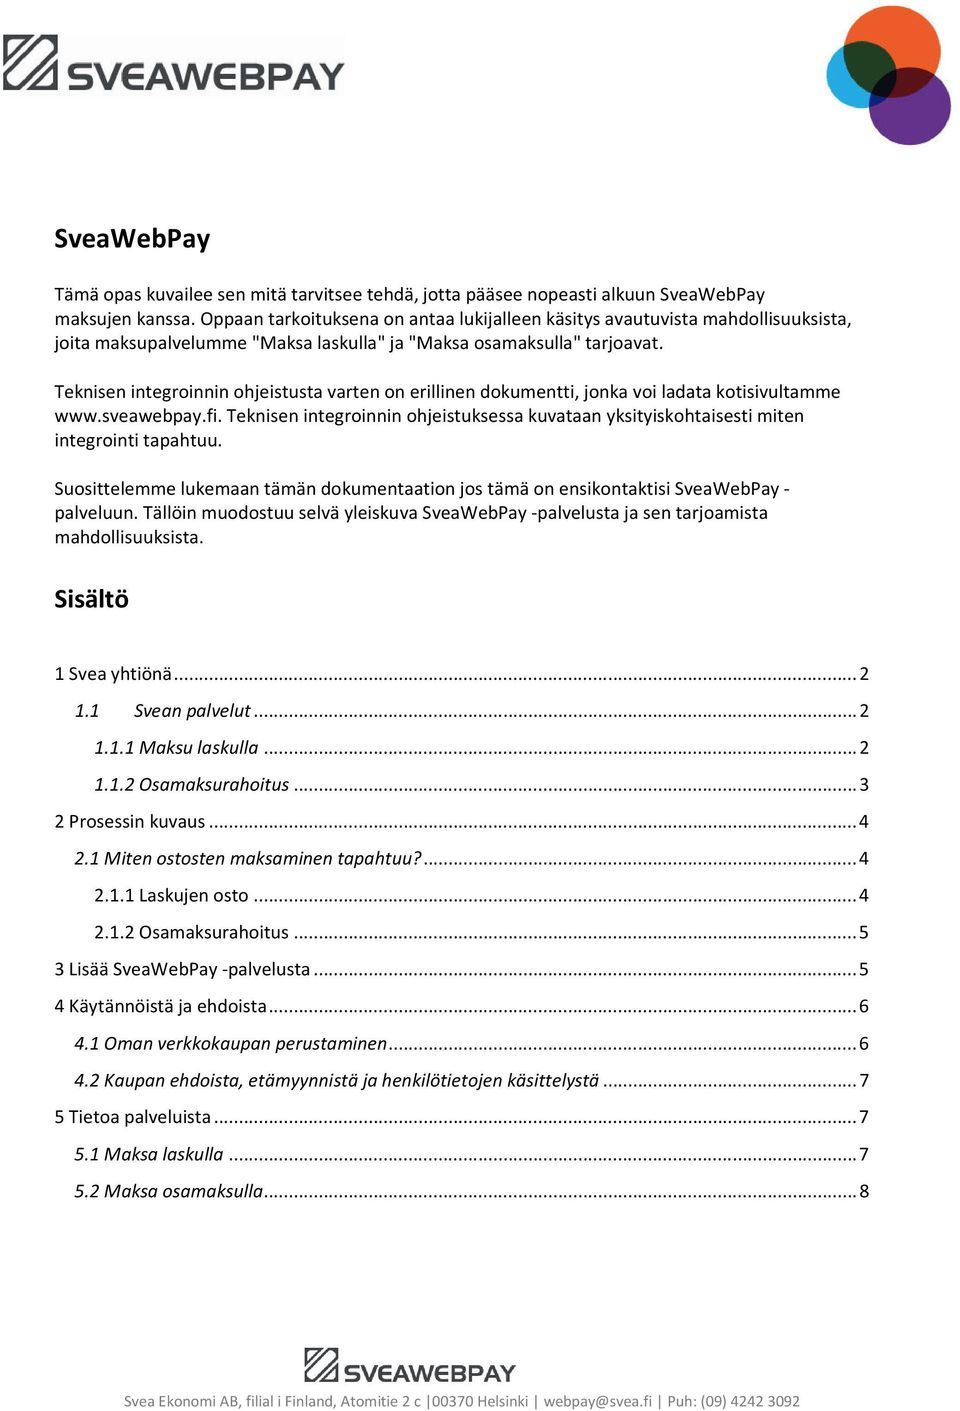 Teknisen integroinnin ohjeistusta varten on erillinen dokumentti, jonka voi ladata kotisivultamme www.sveawebpay.fi.